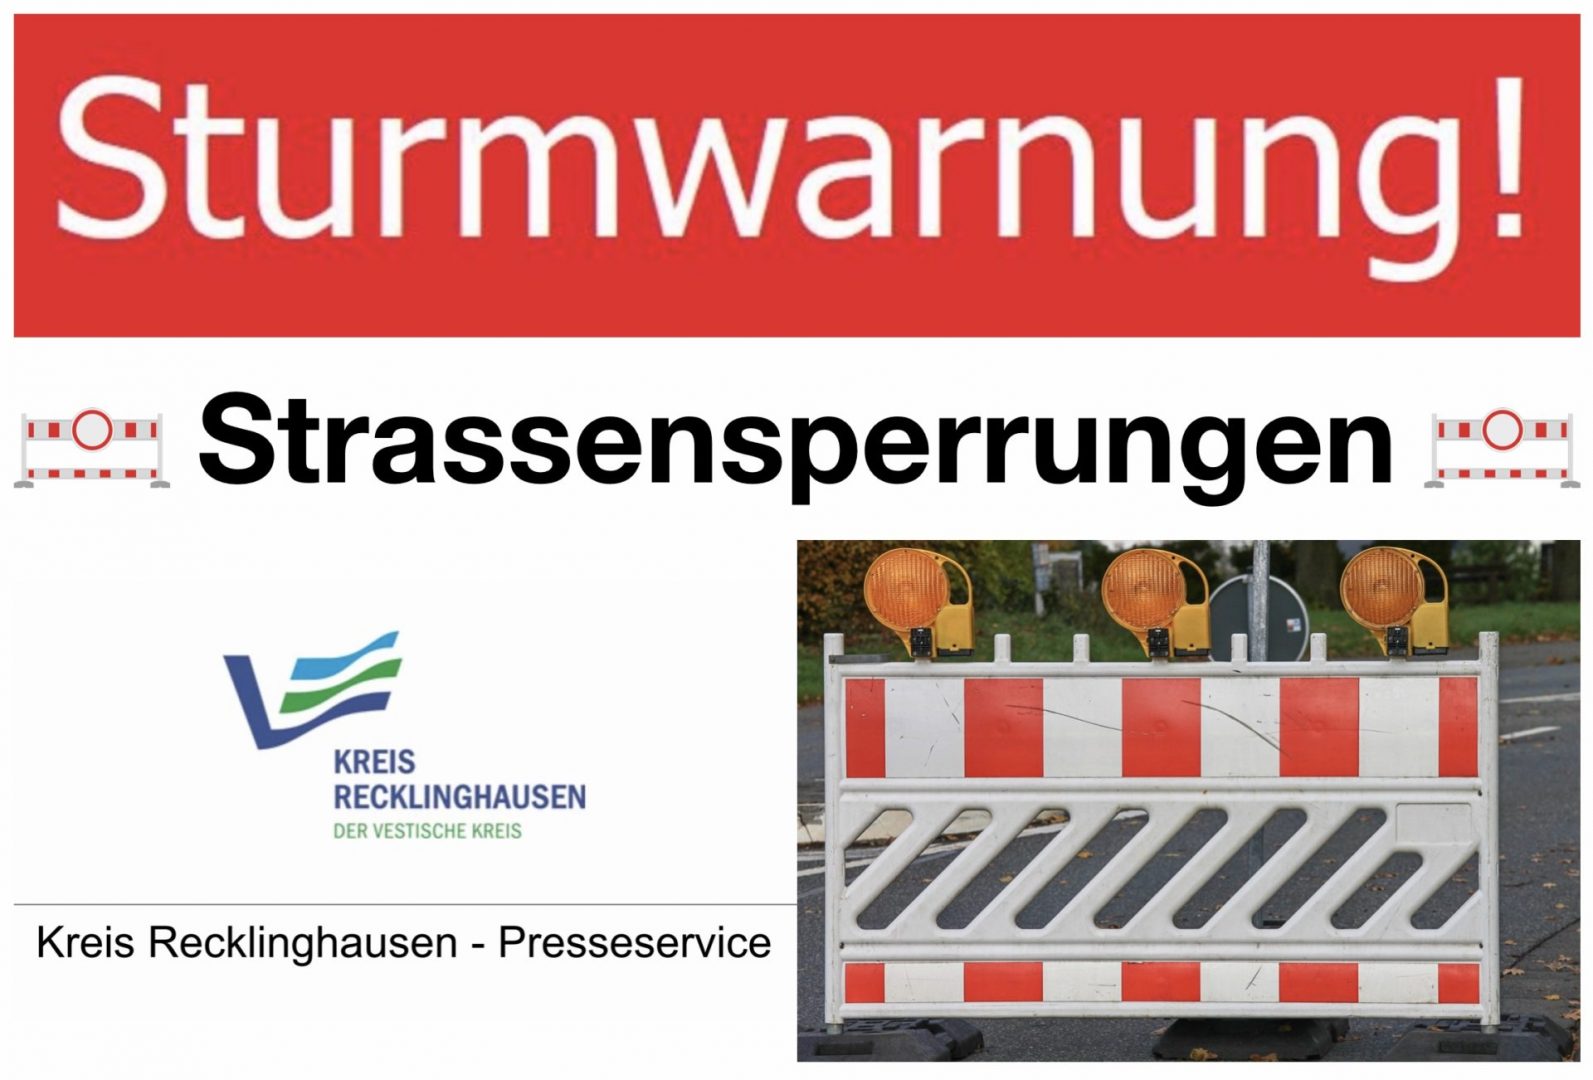 Sturmwarnung: Vorsorgliche Straßensperrungen im Kreis Recklinghausen ab Sonntagmittag